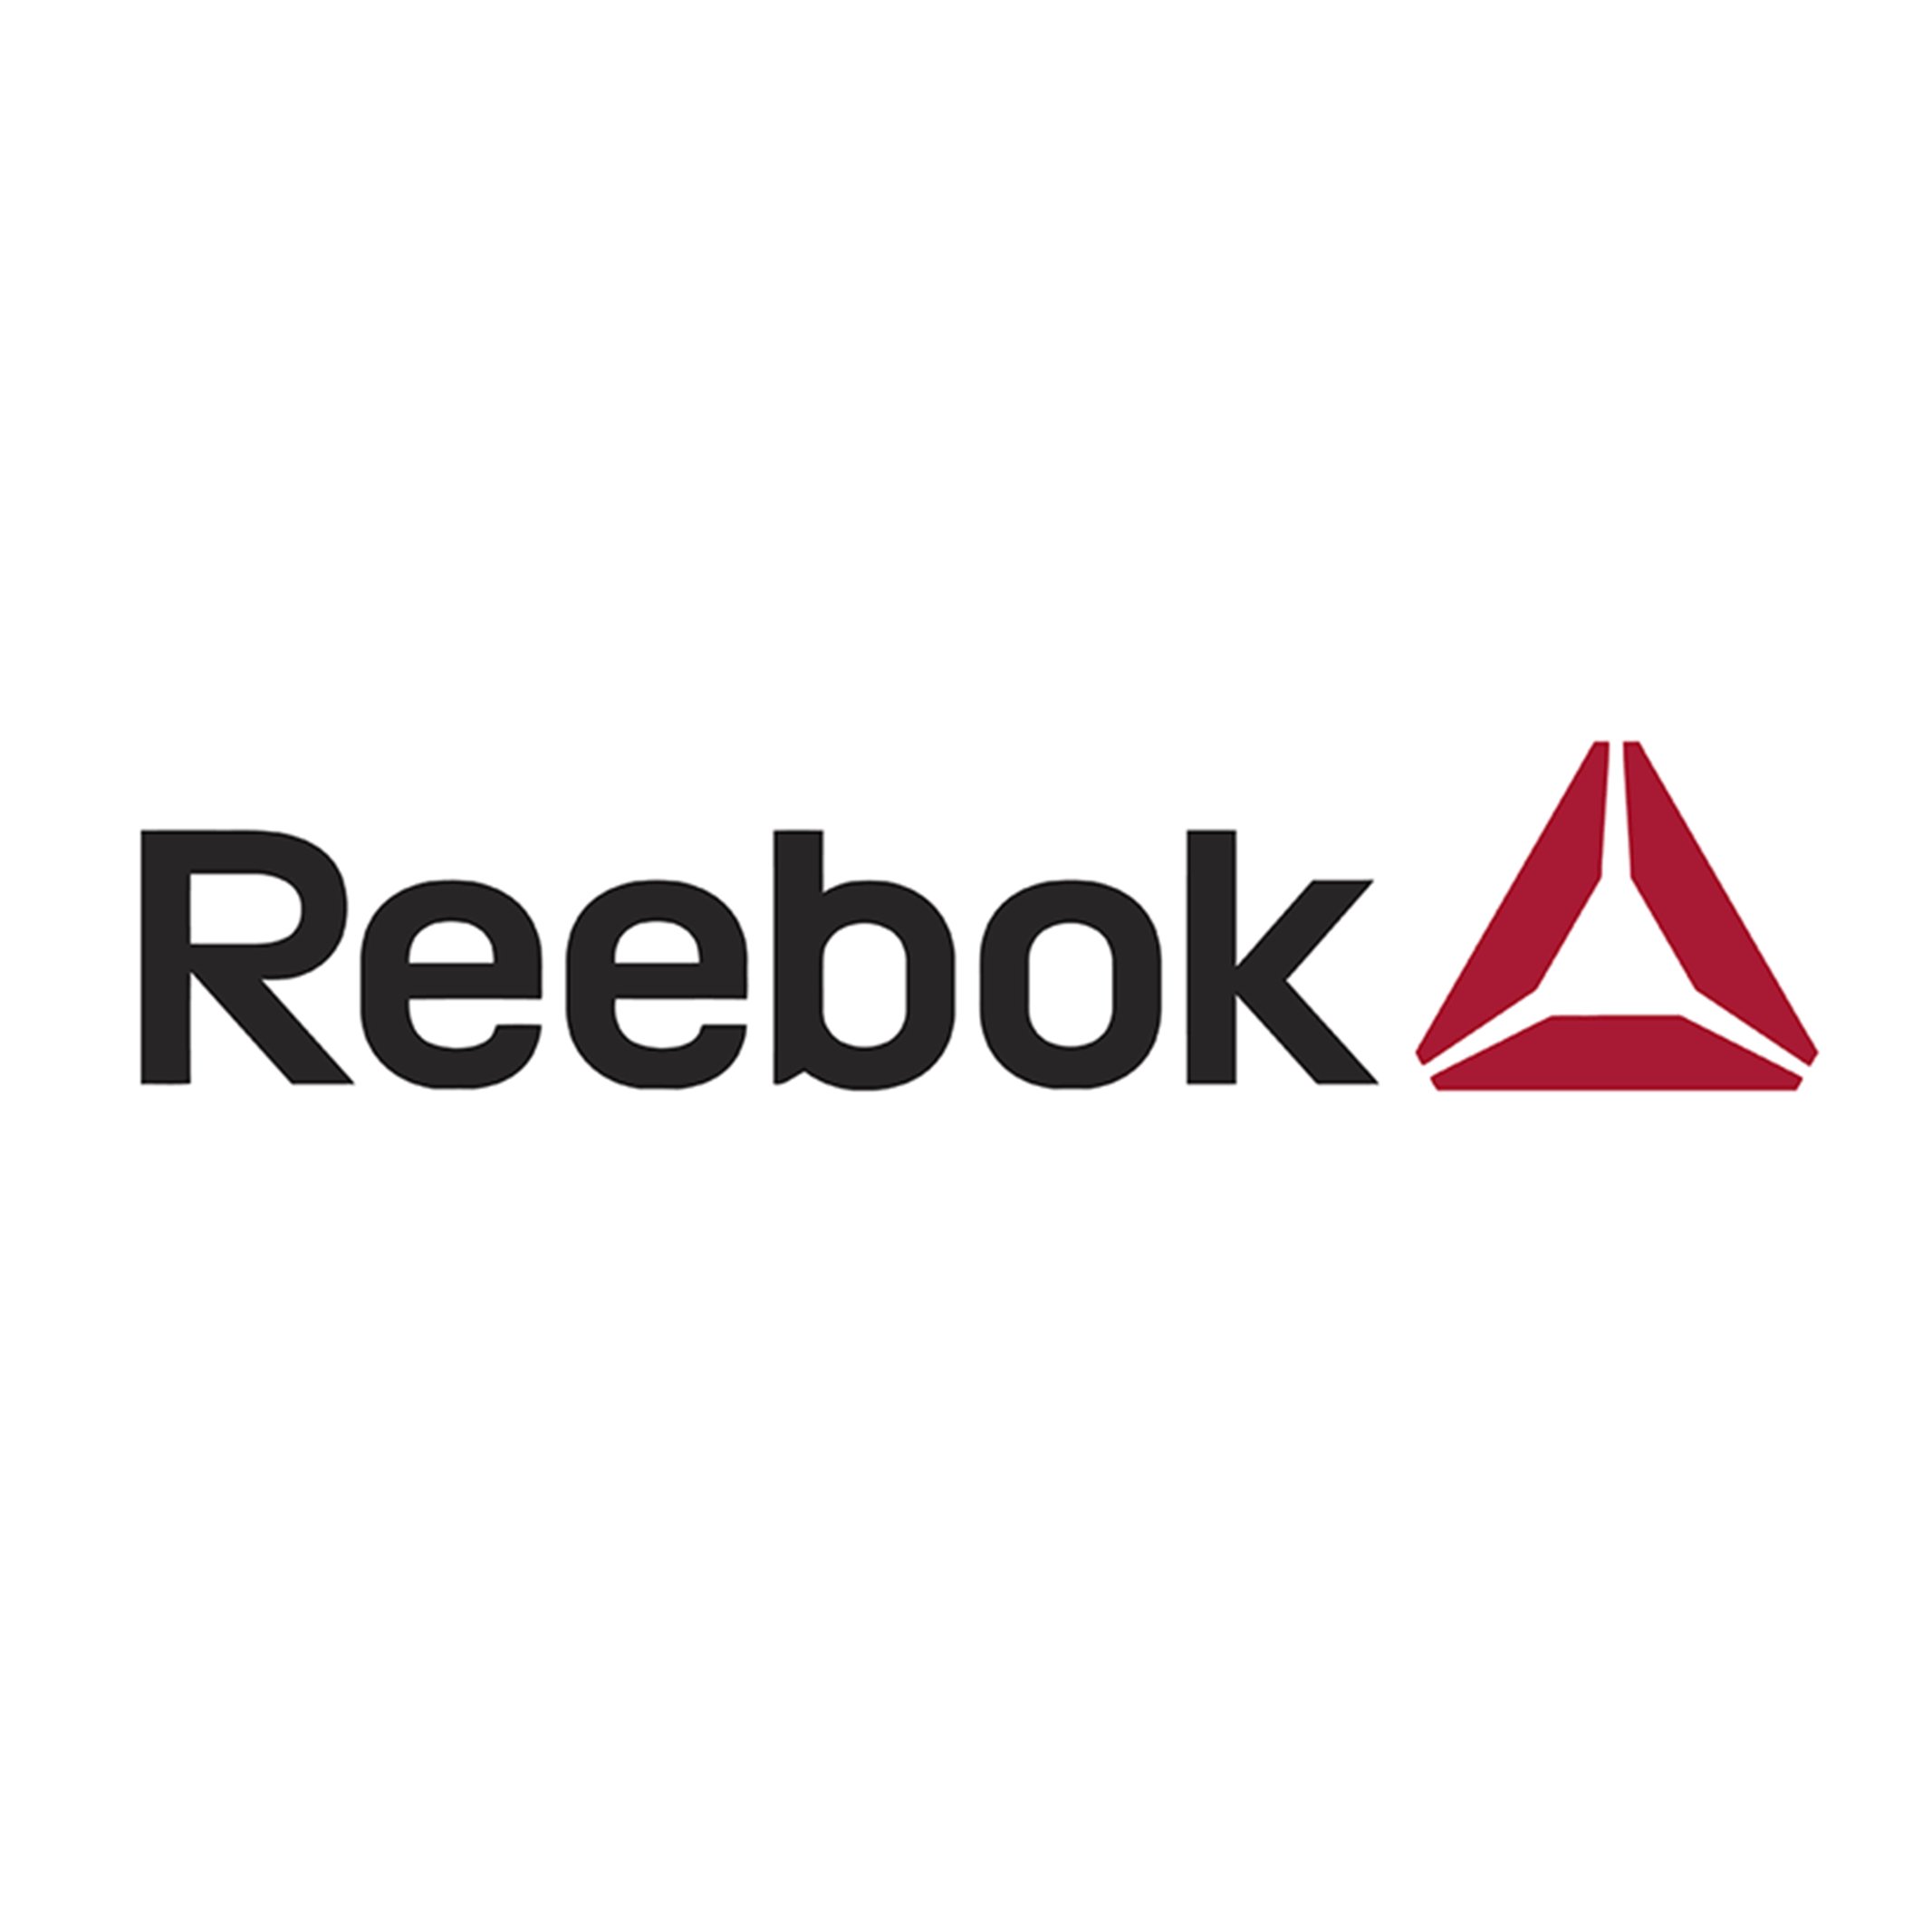 Reposición Alegre guión Crece Agency on Twitter: "¡Regreso al pasado! @Reebok Reebok cambia su logo  rediseñando el que tenía en 1992, a veces para avanzar hay que retroceder.  ¿Con cuál os quedáis? https://t.co/cKgGI8kJ8s #creceagency #graphicdesign #